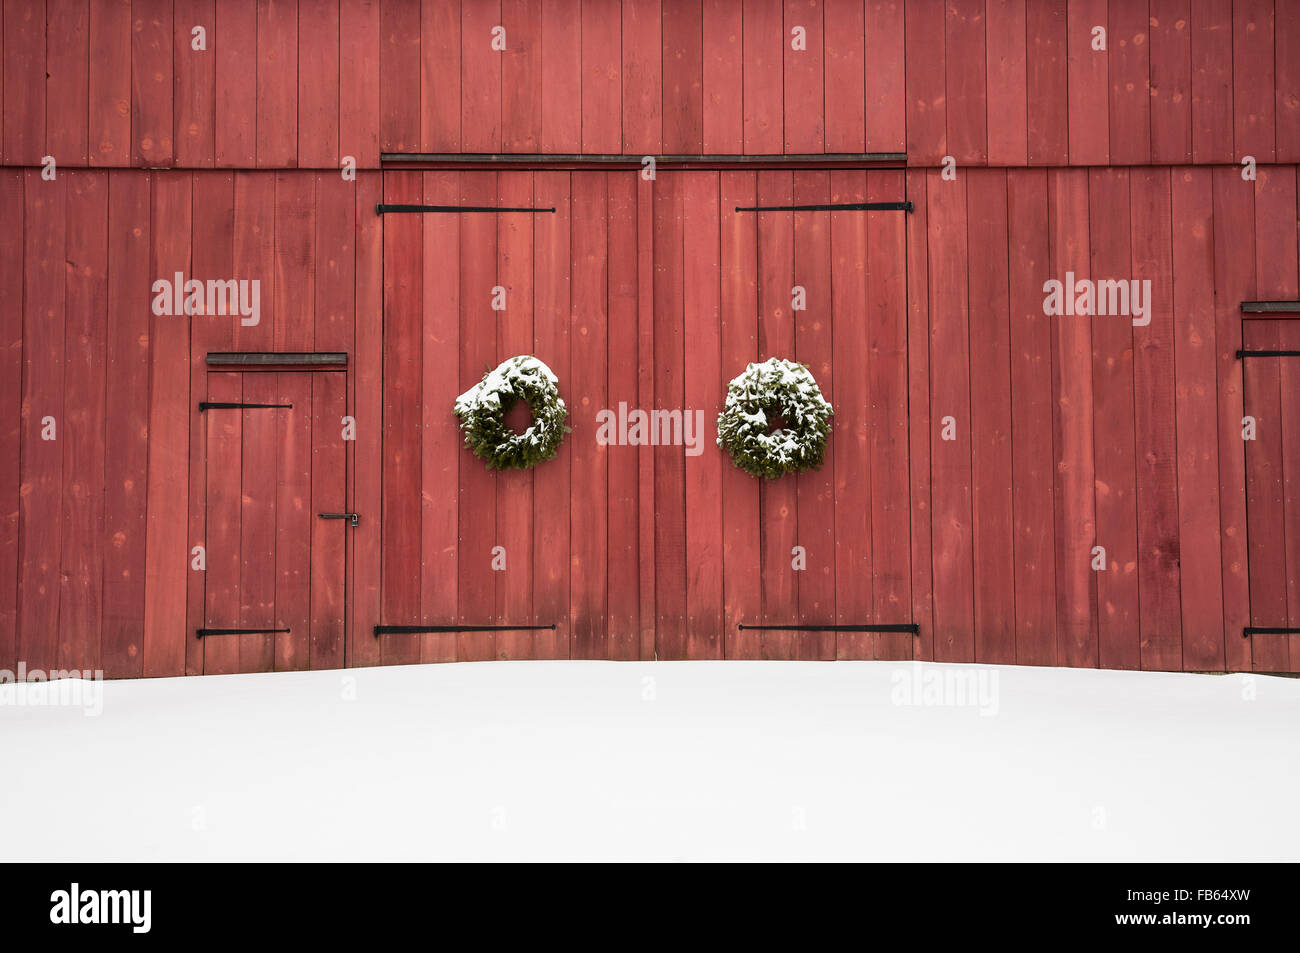 Historische rote Scheunentür Schnee Nahaufnahme kolonialen Weihnachtstür Kränze während Schneesturm in Mercer County, New Jersey, USA, vintage Winterlandschaft Stockfoto